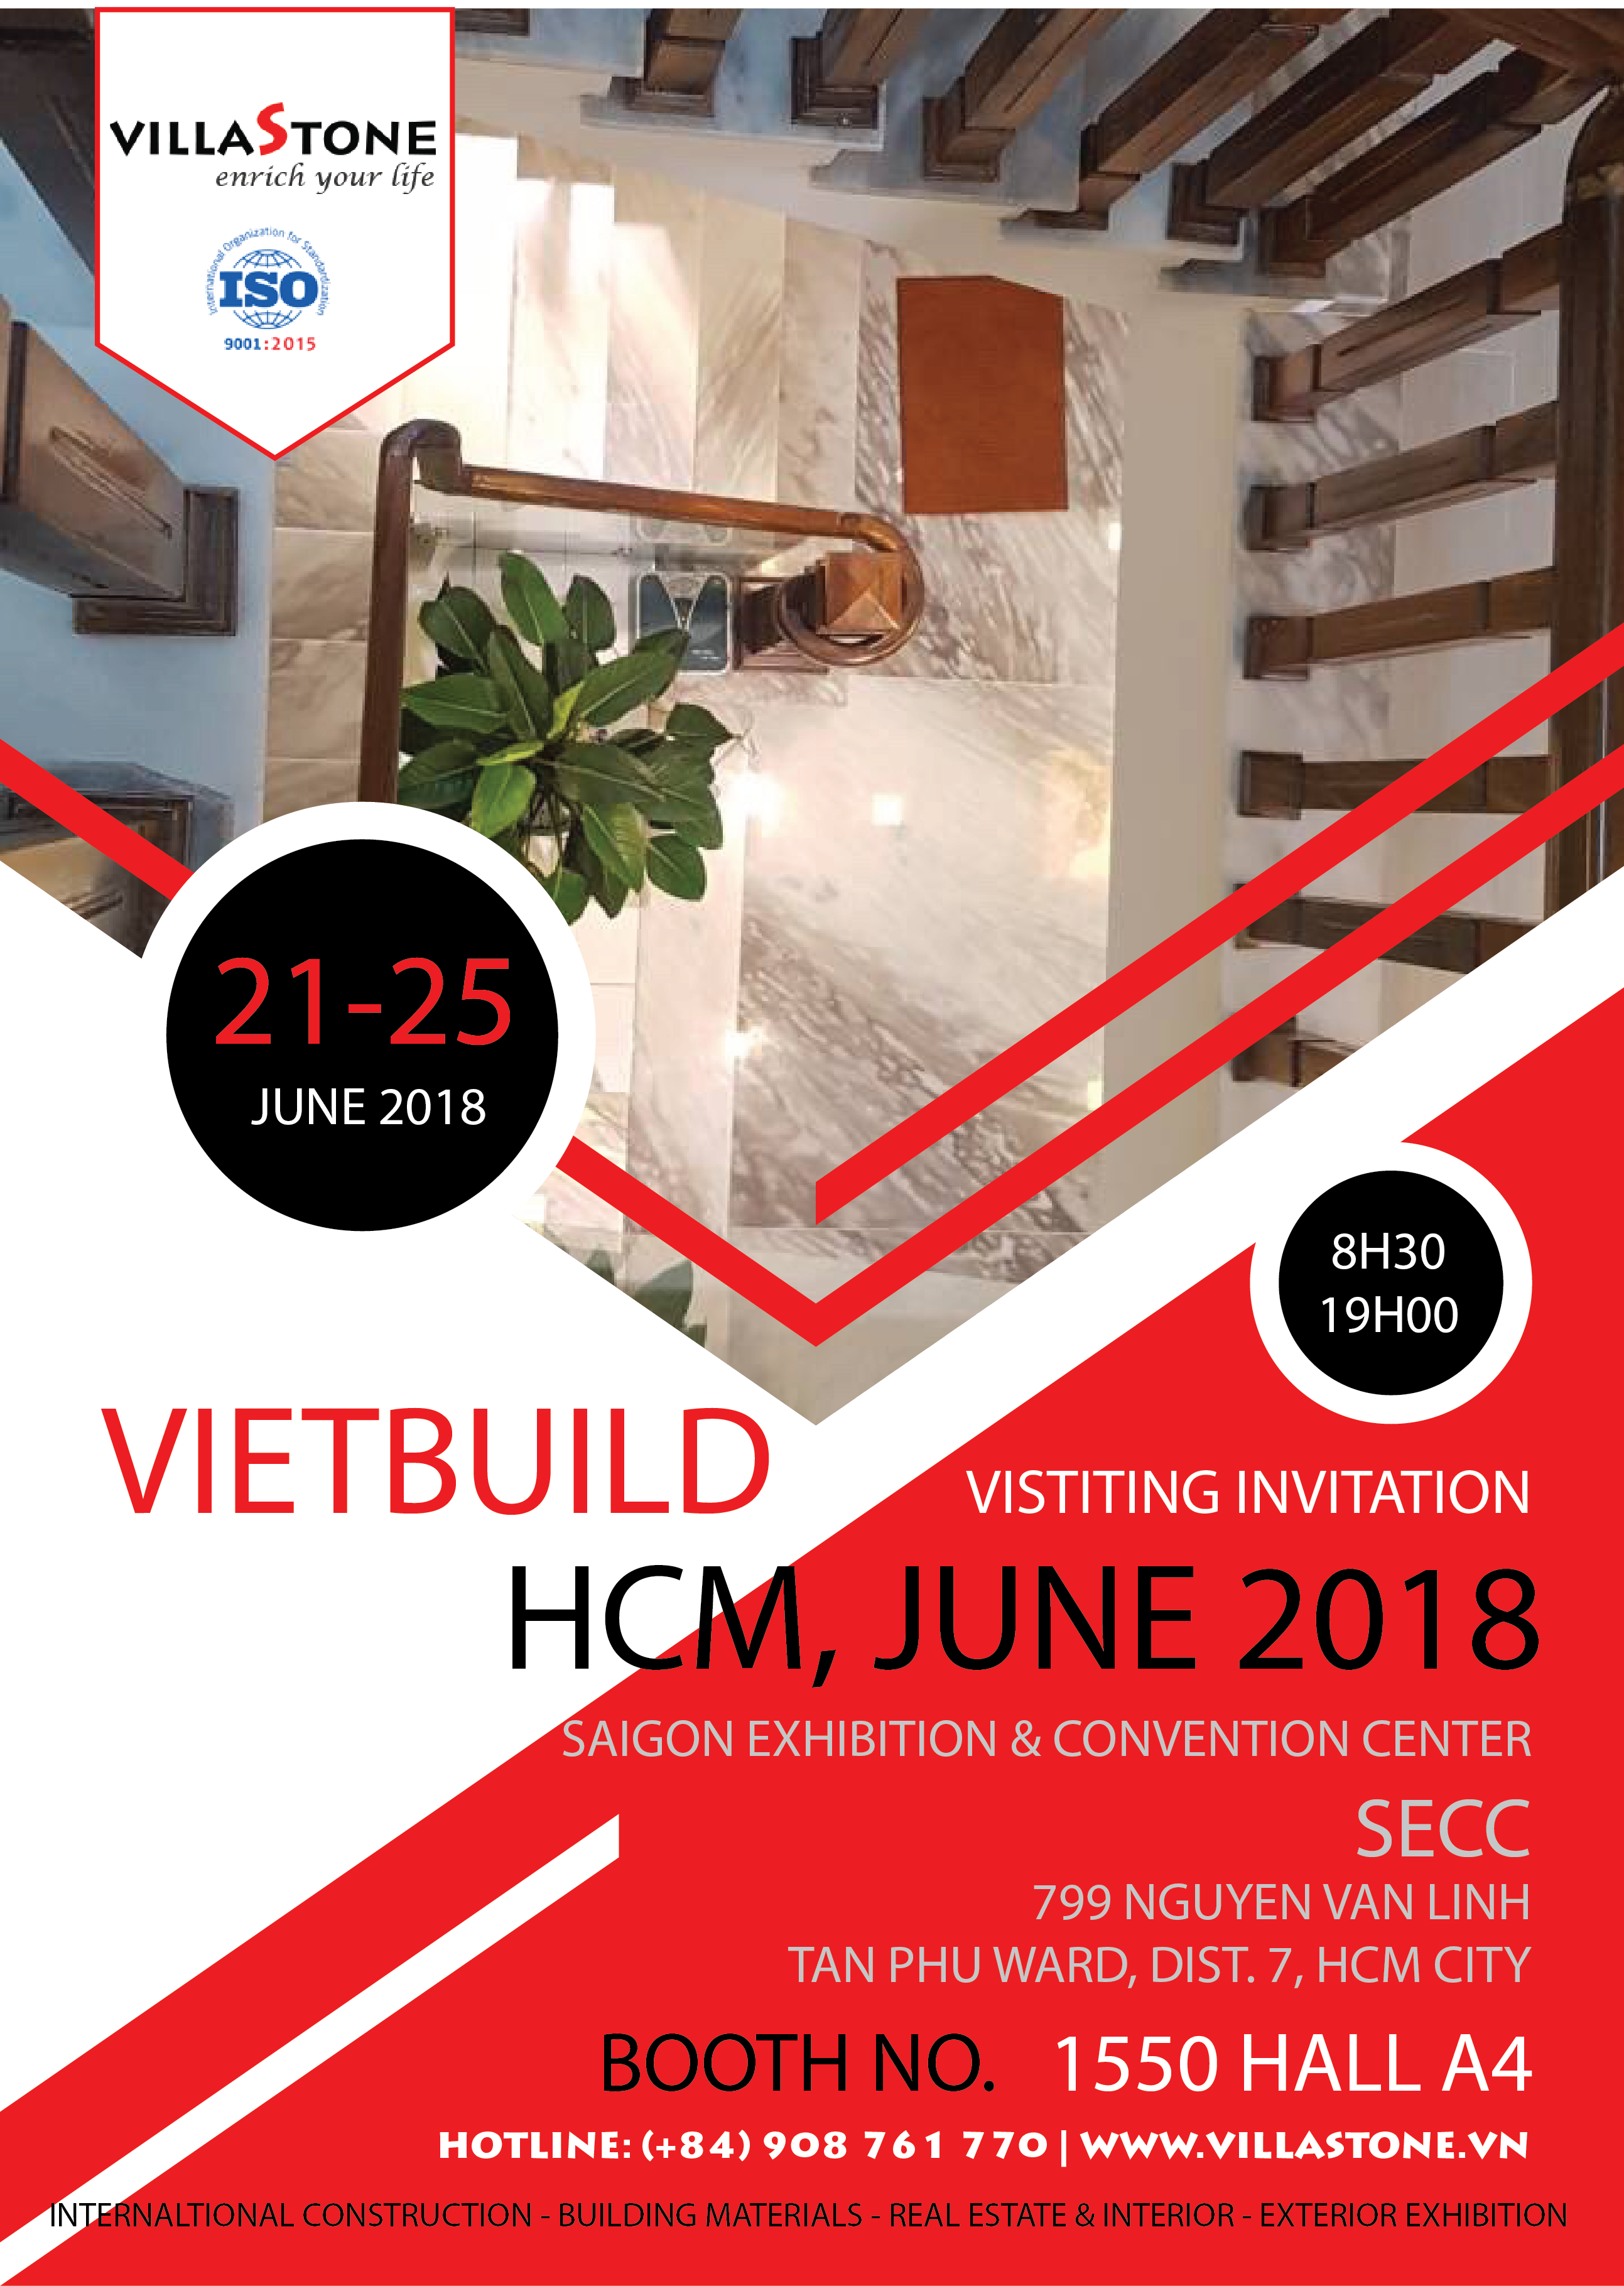 21-25 thang 6 2018: Triển lãm quốc tế về xây dựng - vật liệu xây dựng, bất động sản và trang trí nội thất Vietbuild 2018